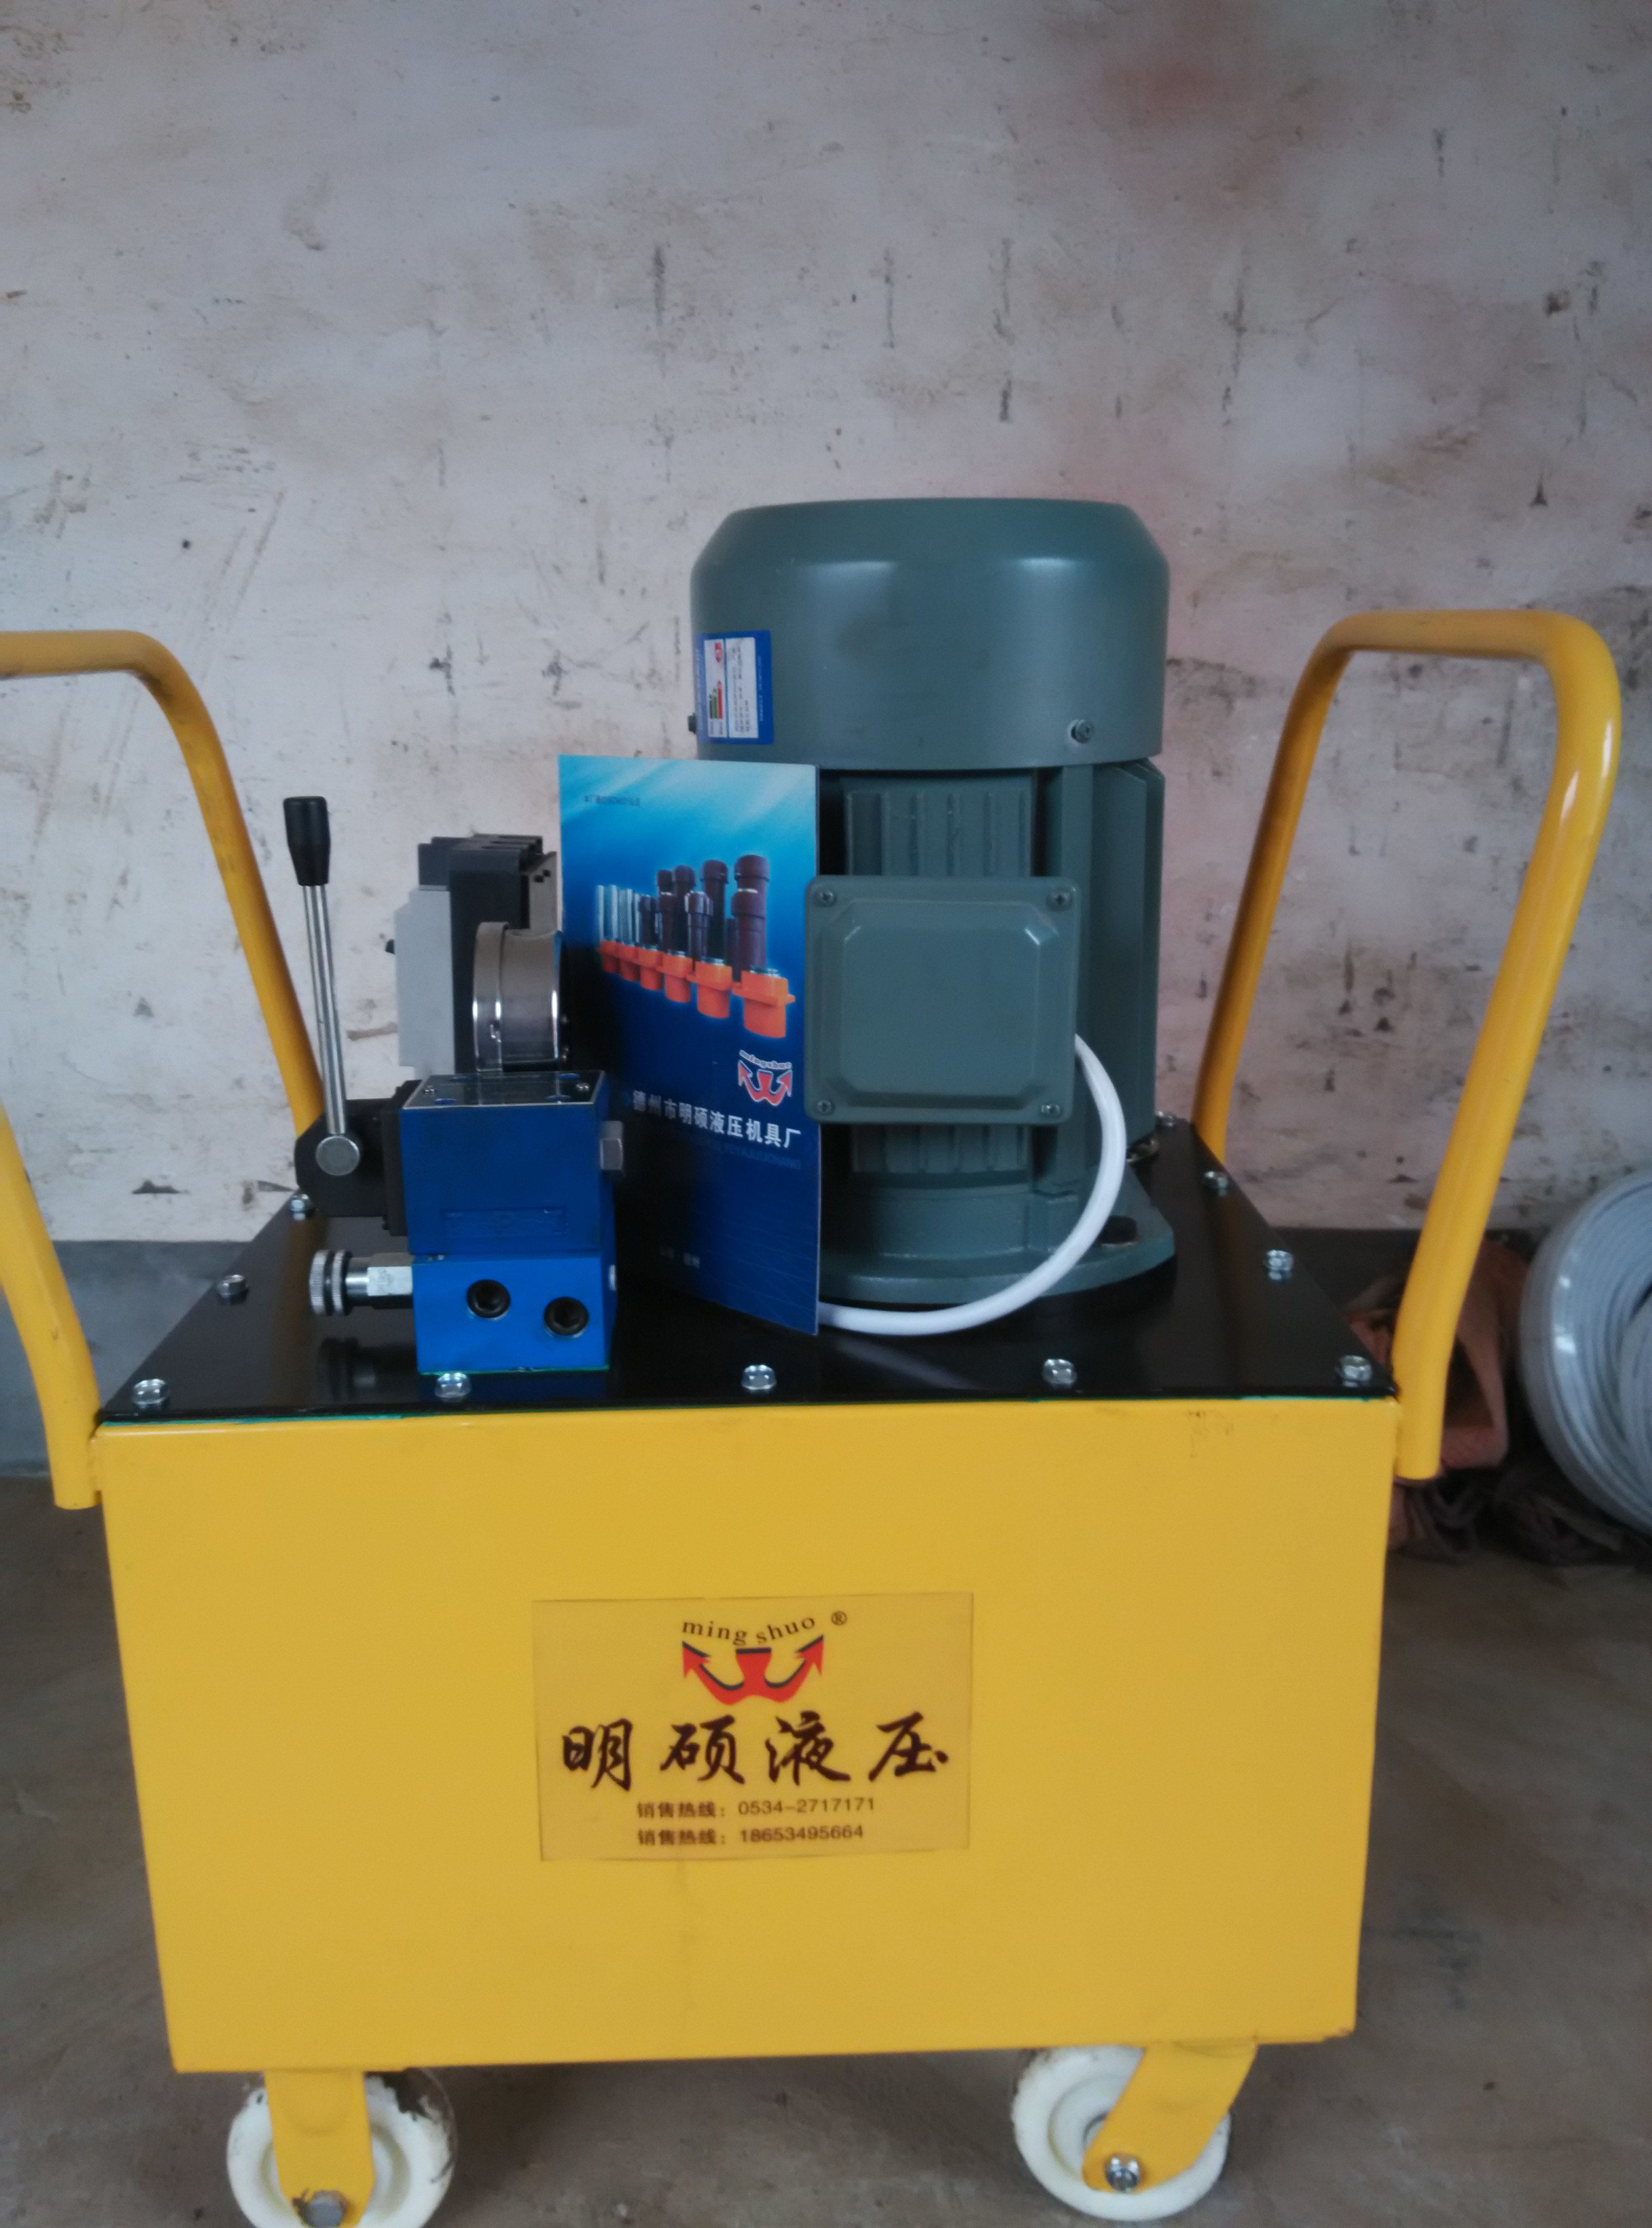 明硕液压厂家供应超高压电动液压泵液压泵站电动液压泵液压油泵